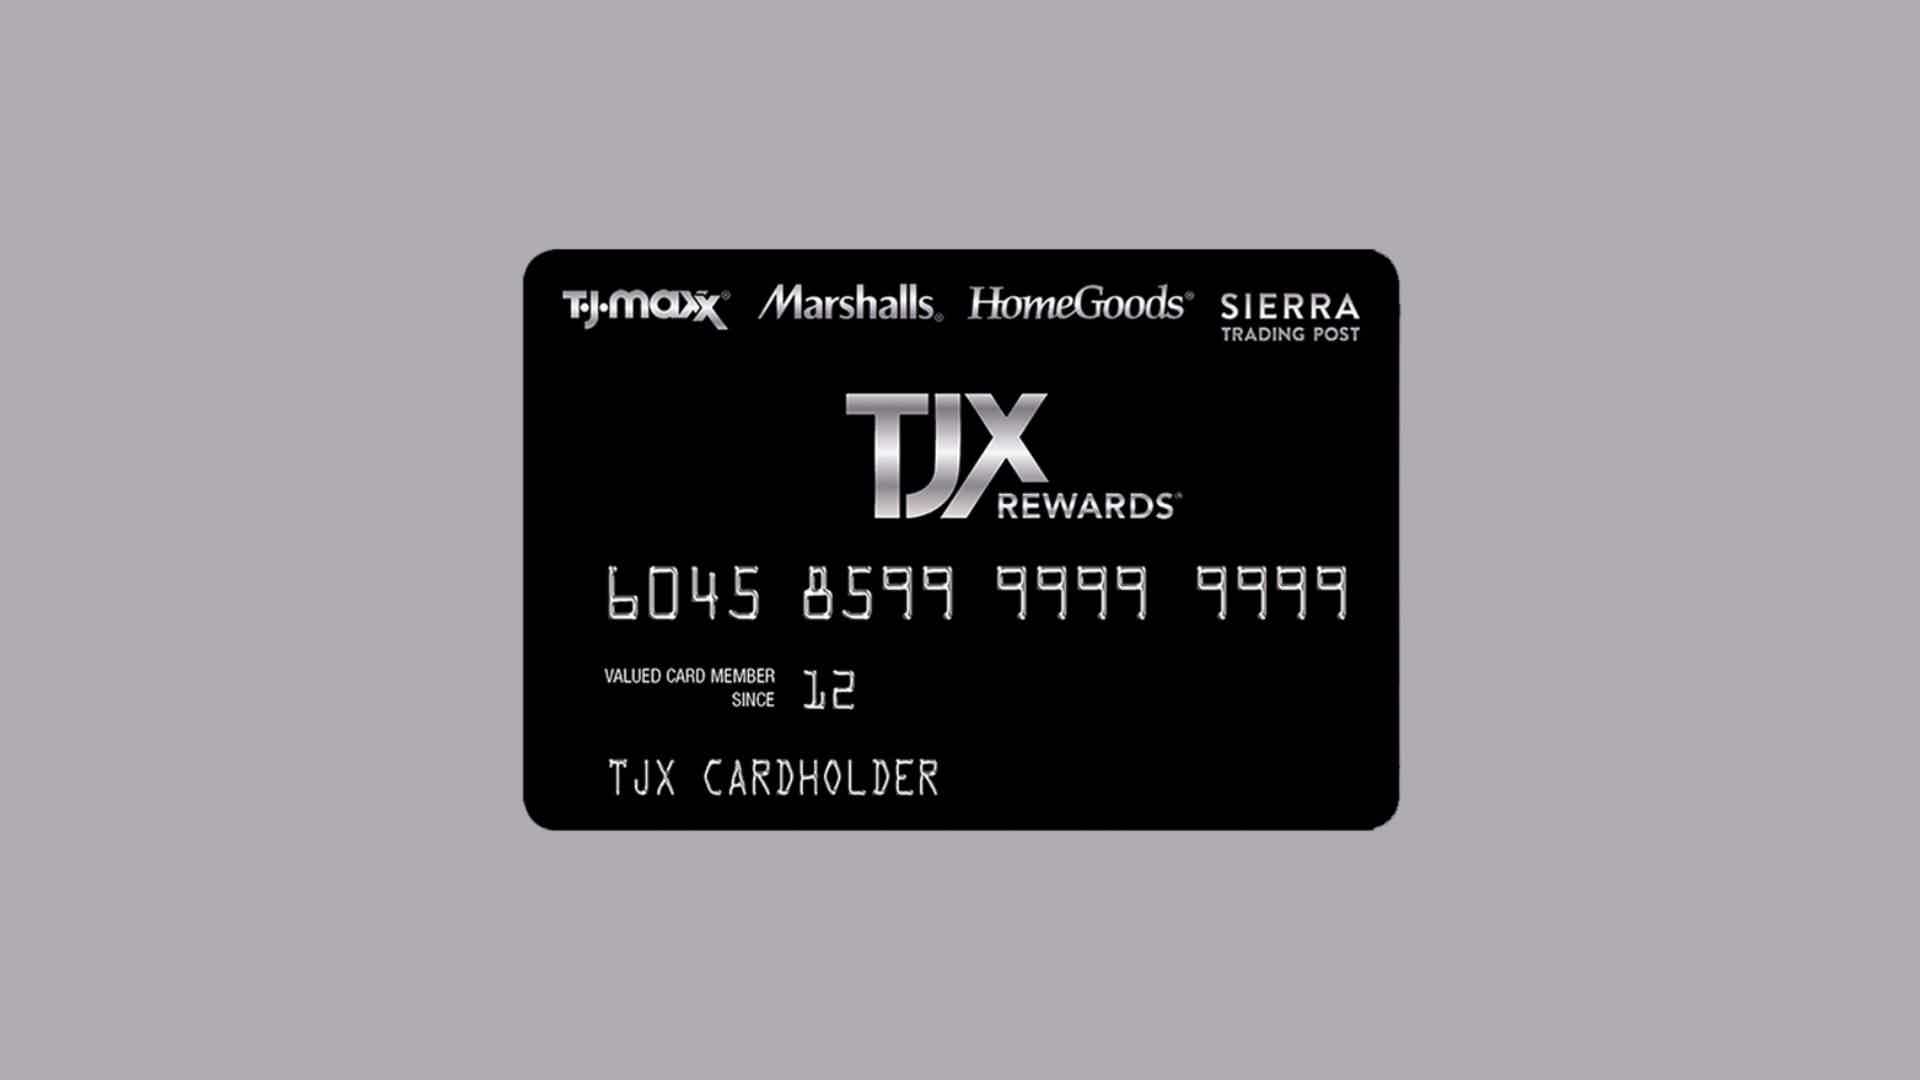 Conheça tudo sobre o cartão TXJ. Fonte: TJ Maxx.